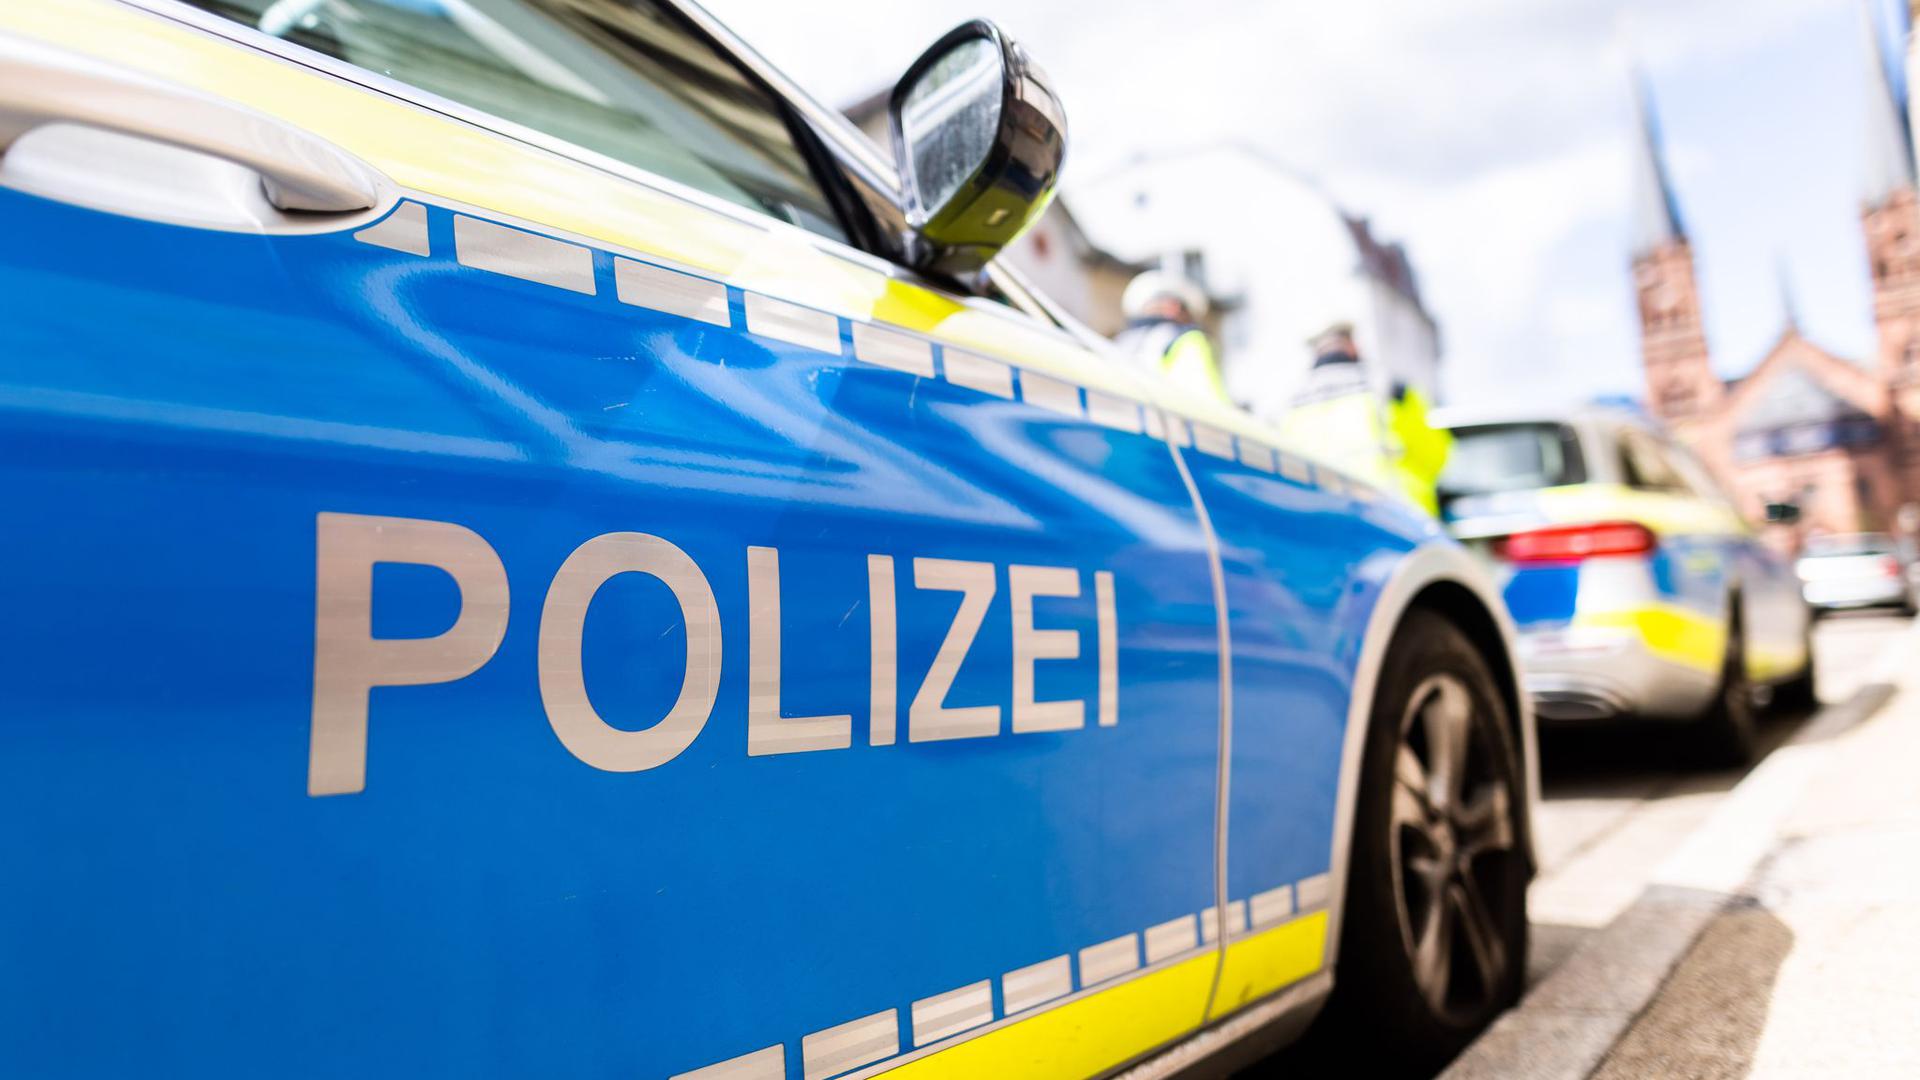 Die Polizei ermittelt im Fall eines toten Ehepaars in Rostock.